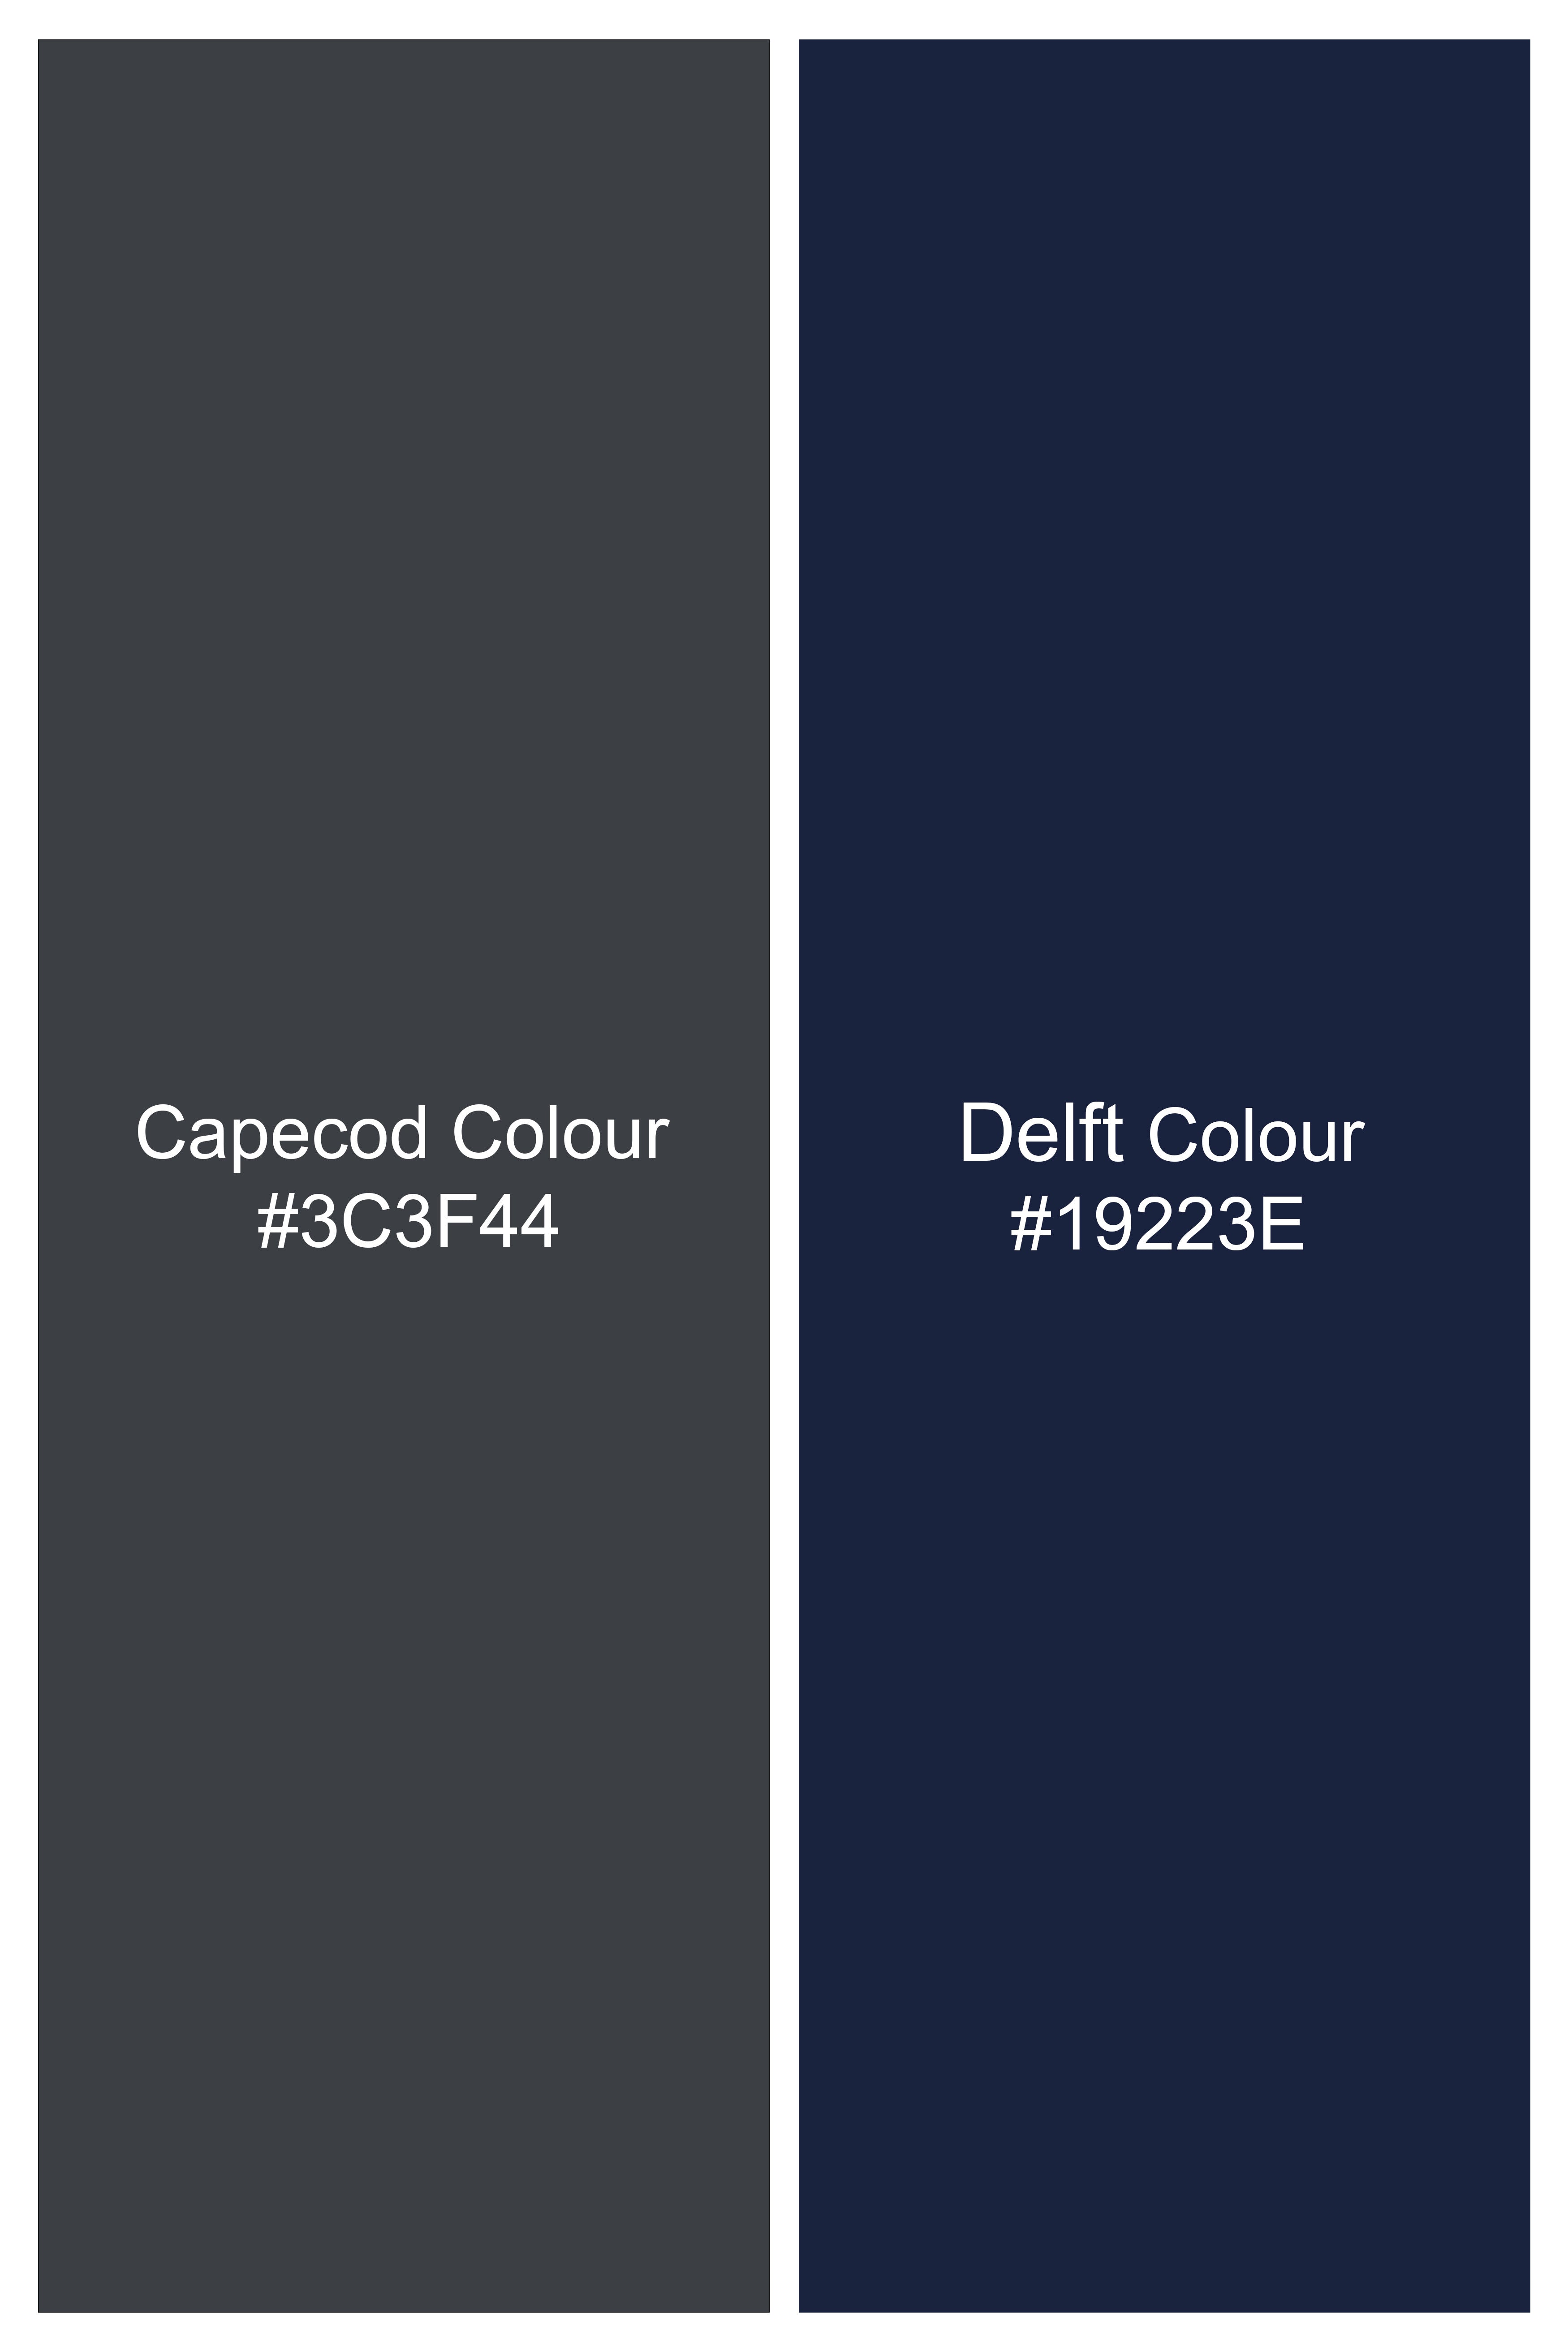 Capecod Gray and Delft Blue Subtle Checkered Wool Rich Waistcoat V2905-36, V2905-38, V2905-40, V2905-42, V2905-44, V2905-46, V2905-48, V2905-50, V2905-05, V2905-54, V2905-56, V2905-58, V2905-60